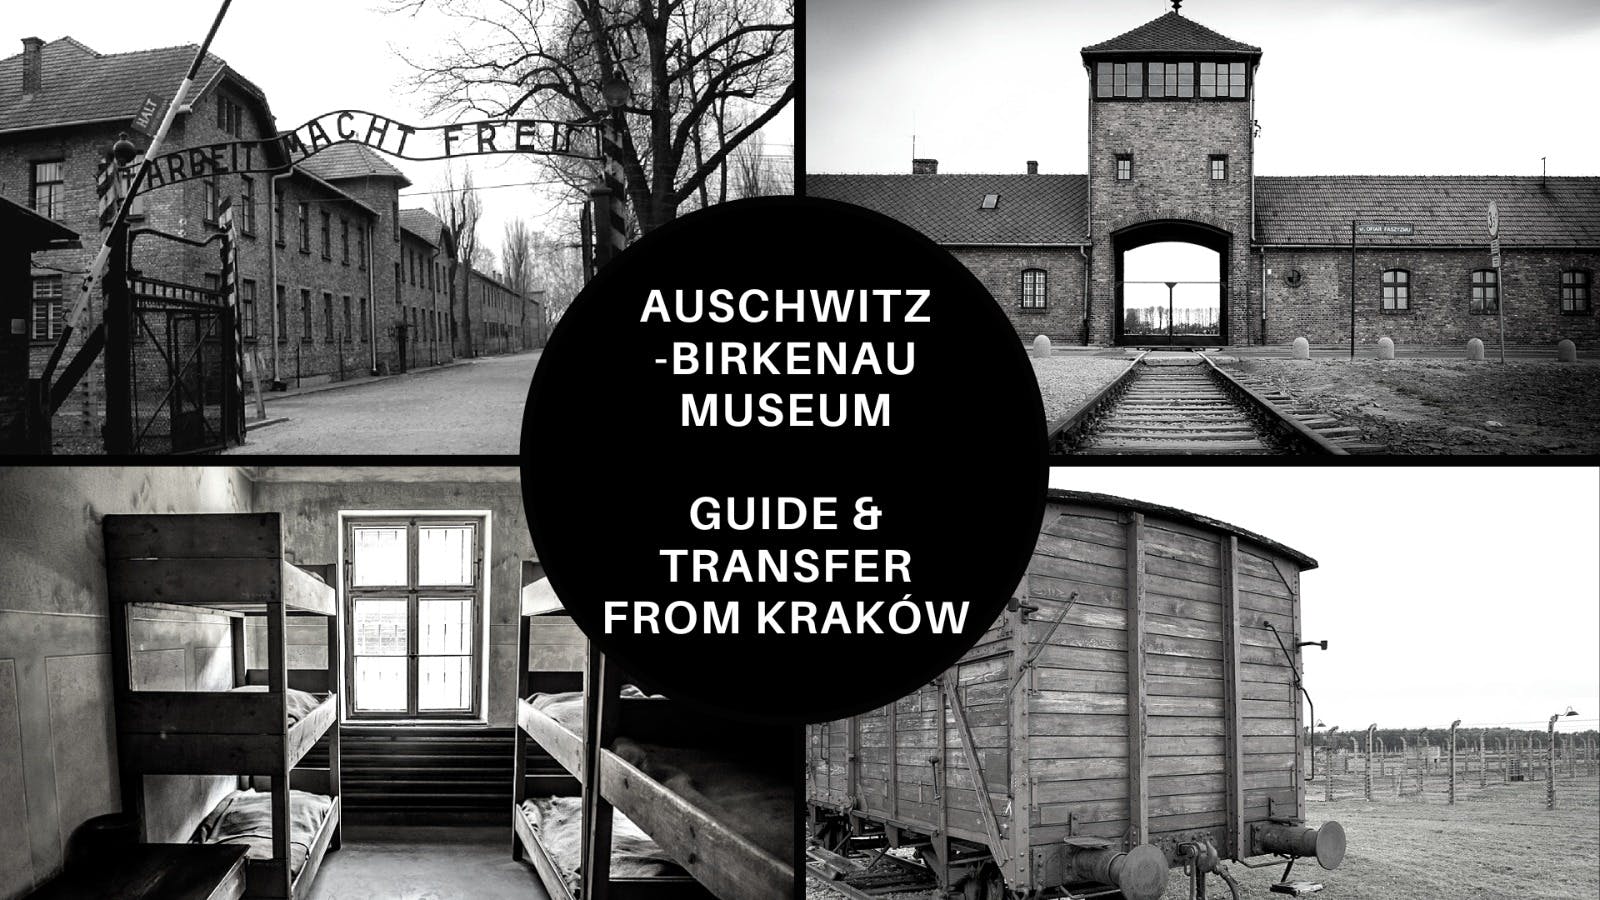 Visita al museo y monumento conmemorativo de Auschwitz Birkenau desde Cracovia